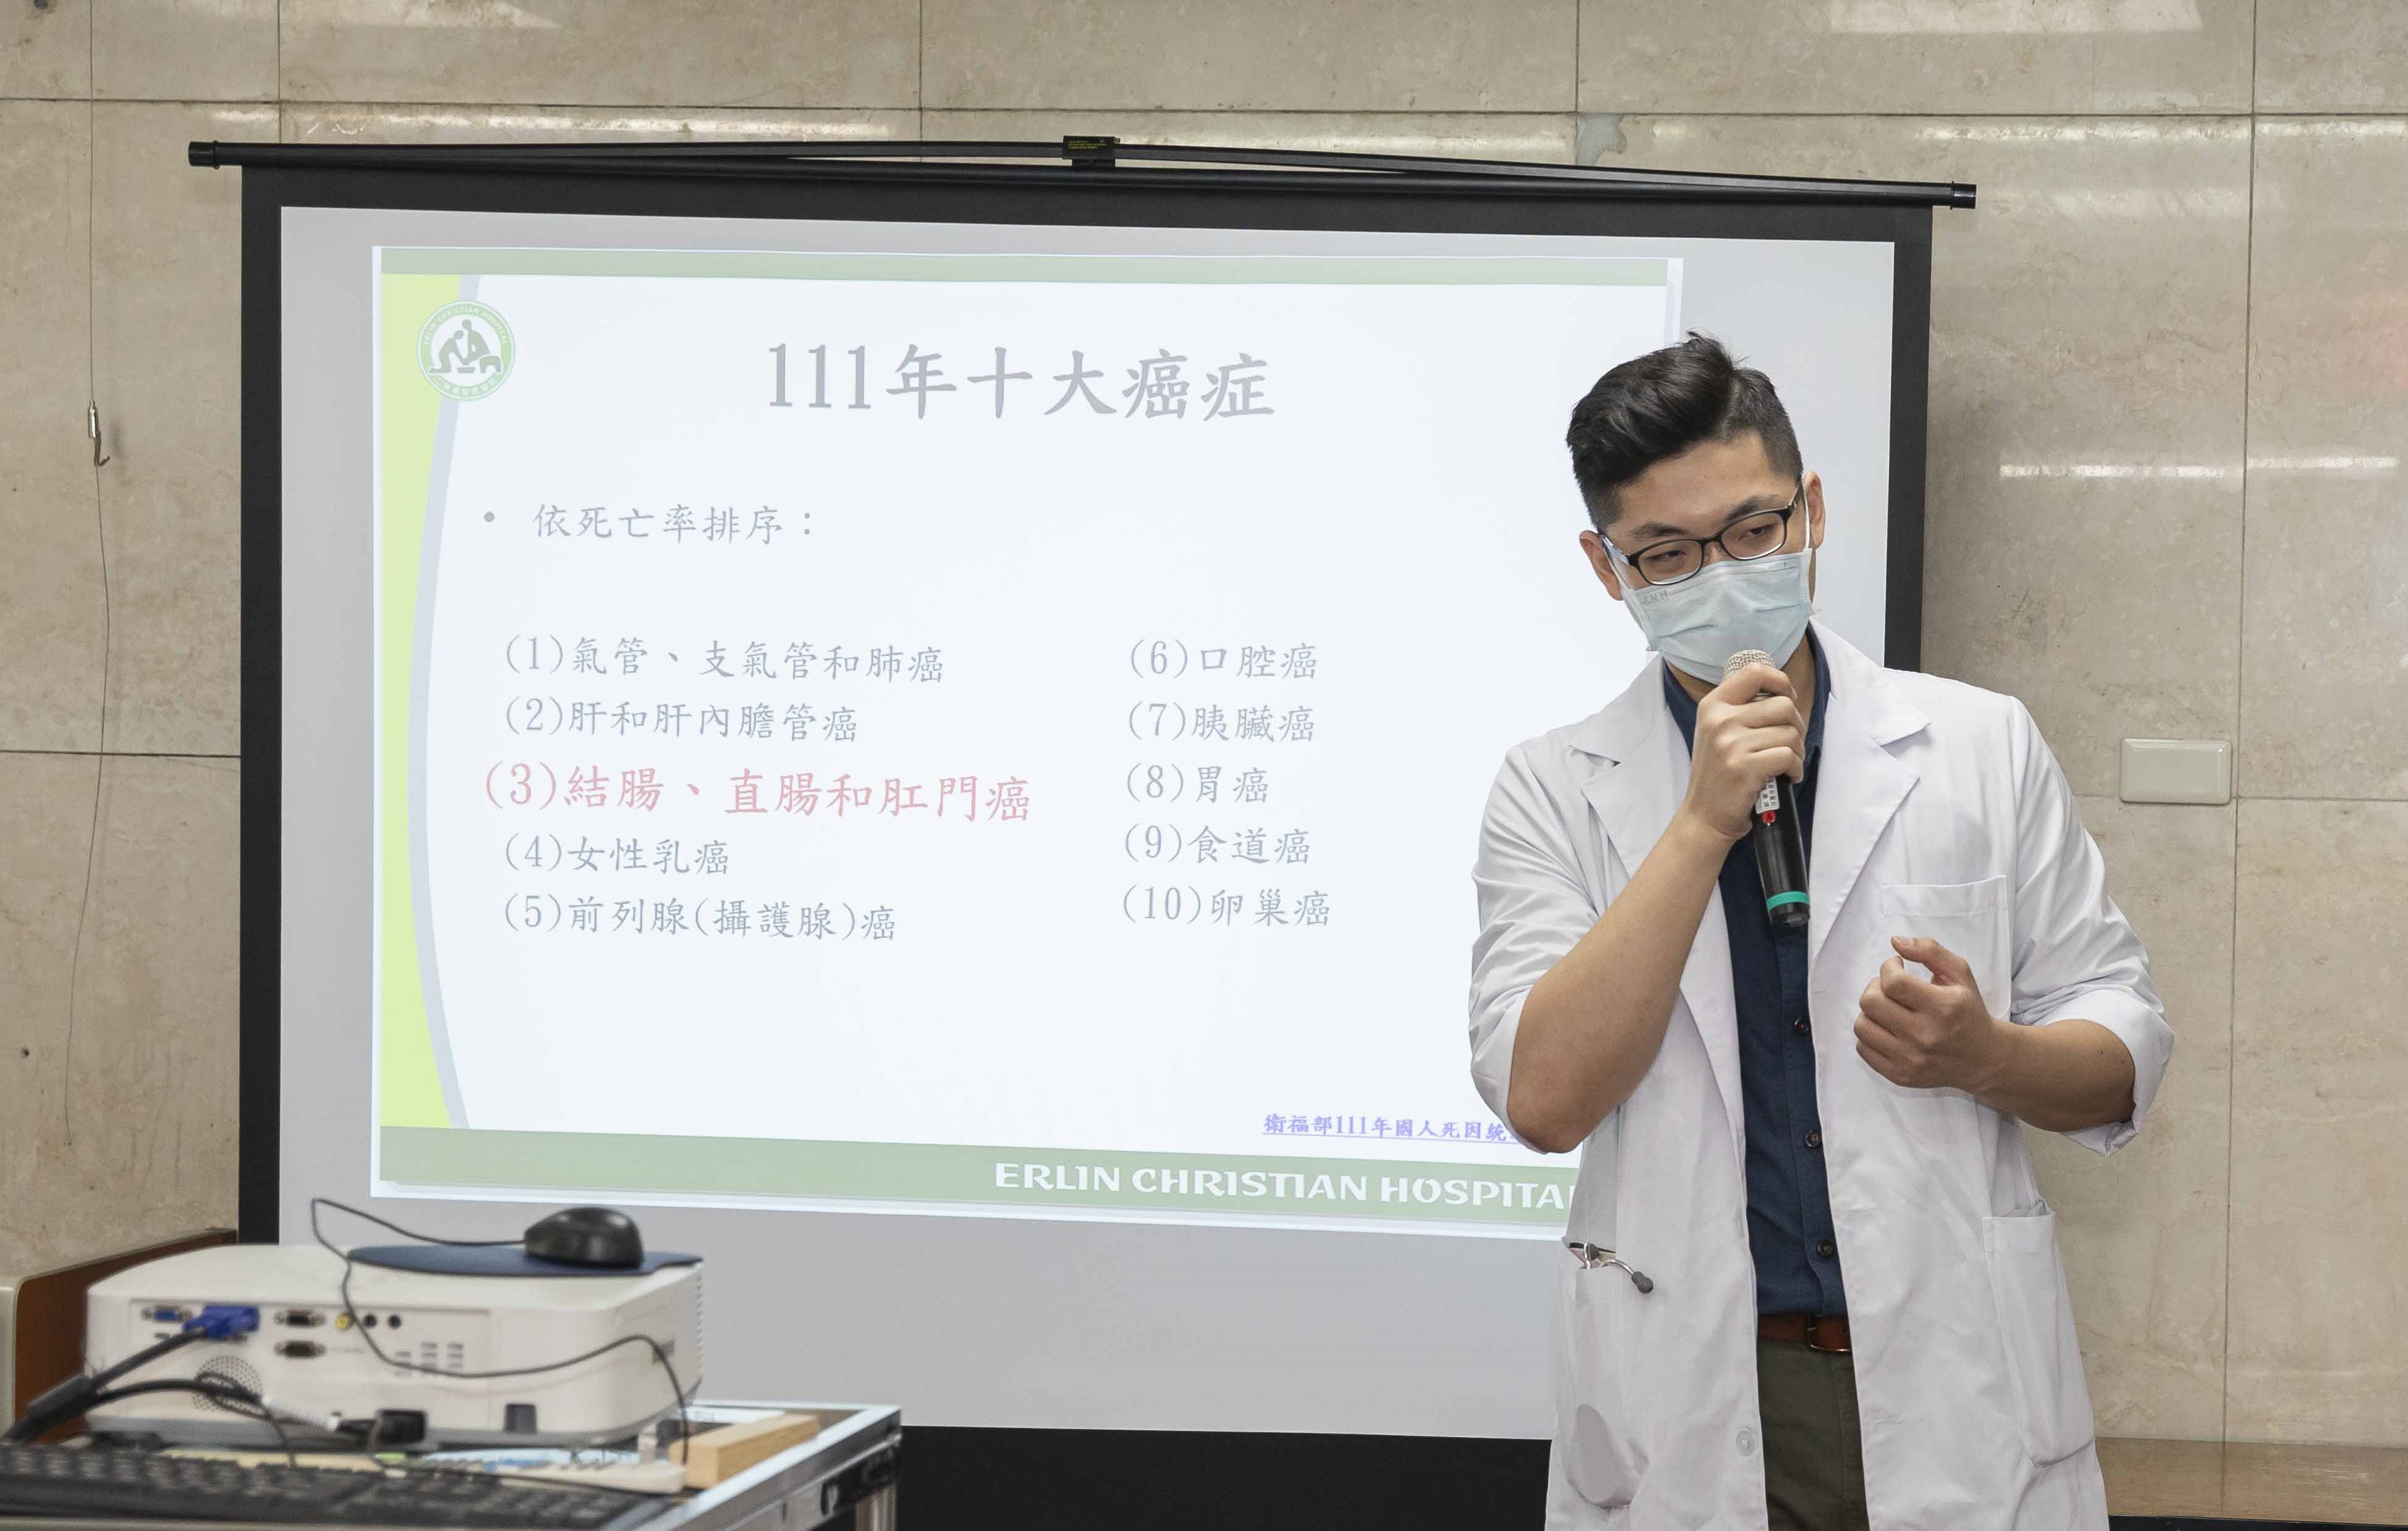 大腸直腸科陳長瑋醫師健康宣講「如何預防大腸癌 」。(圖/彰化二林基督教醫院提供)